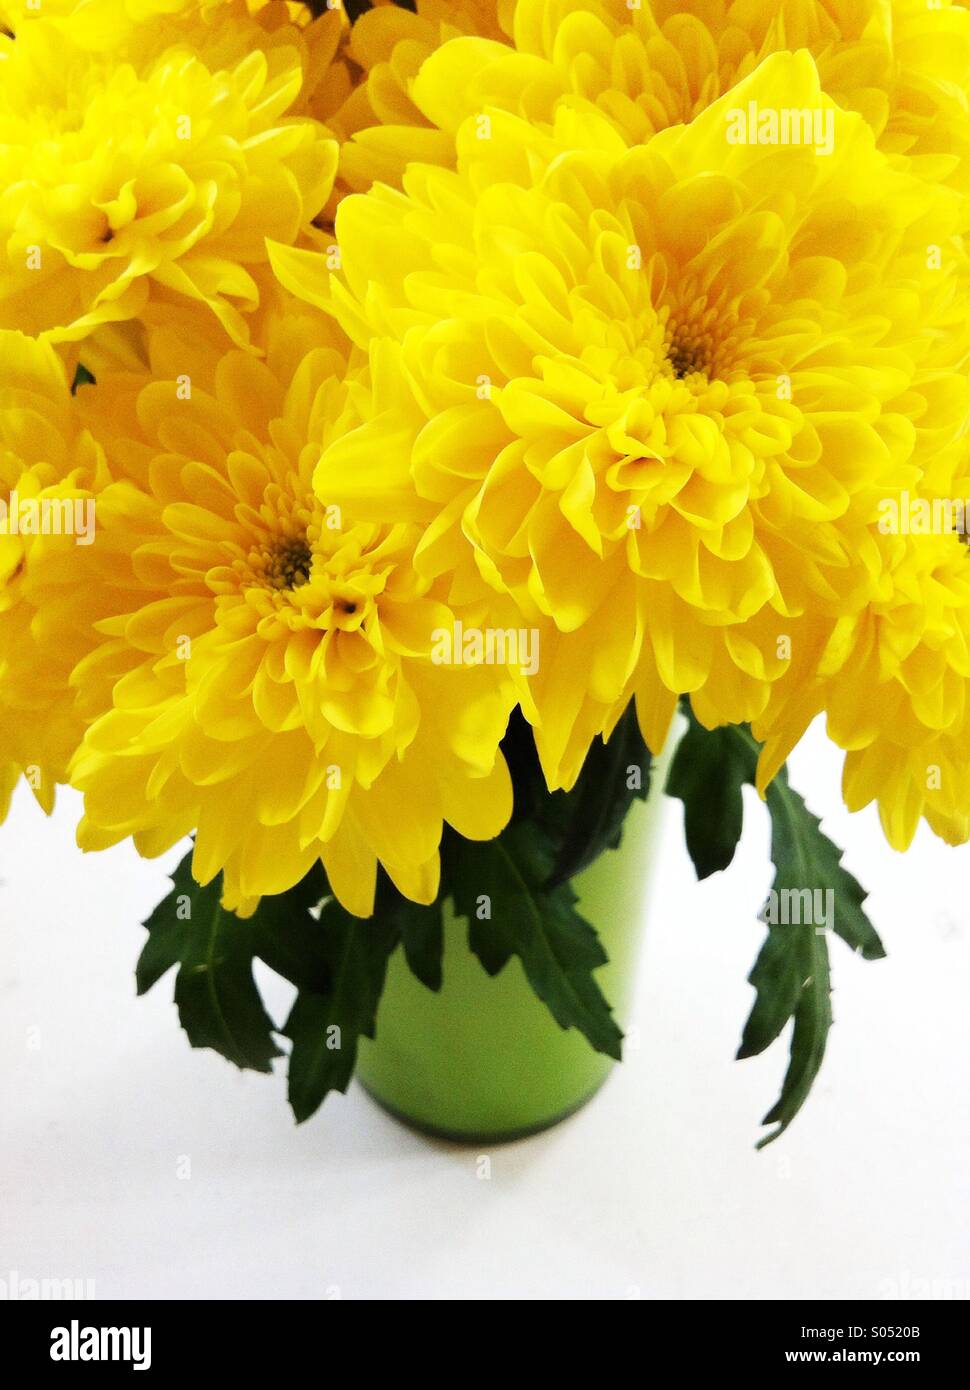 Yellow chrysanthemum flowers Stock Photo